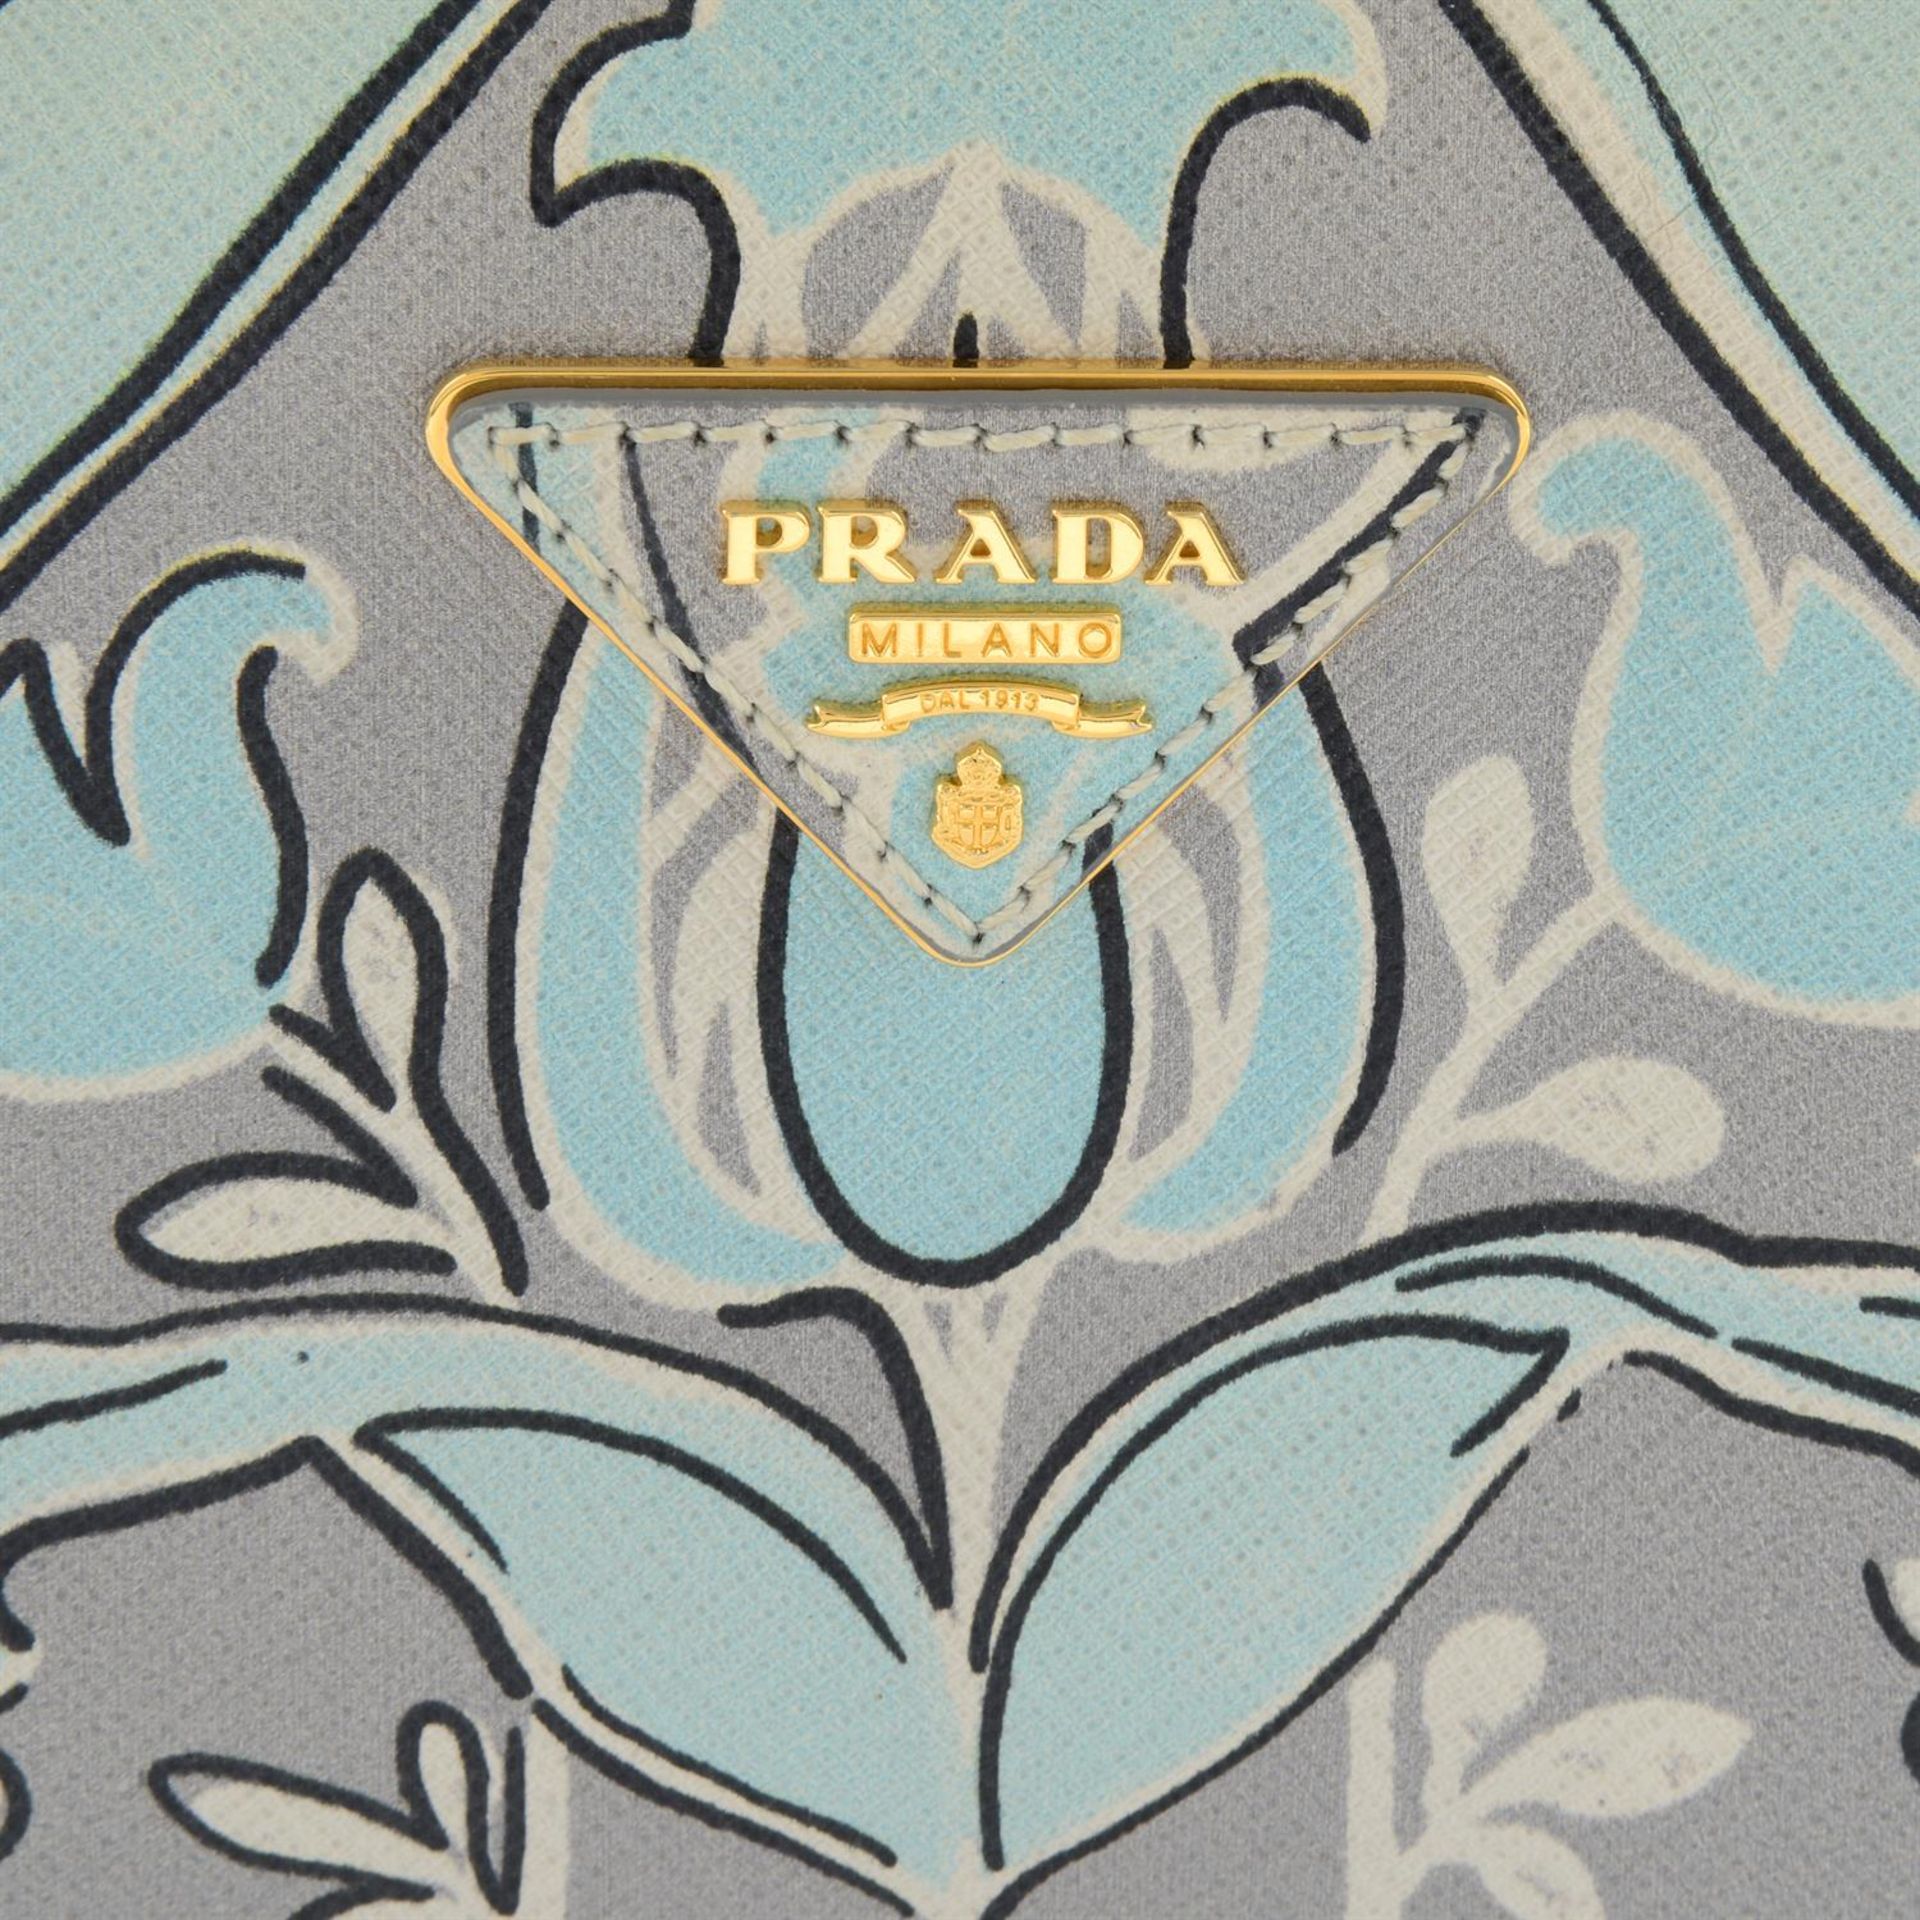 Prada - Saffiano floral print bag. - Image 4 of 5